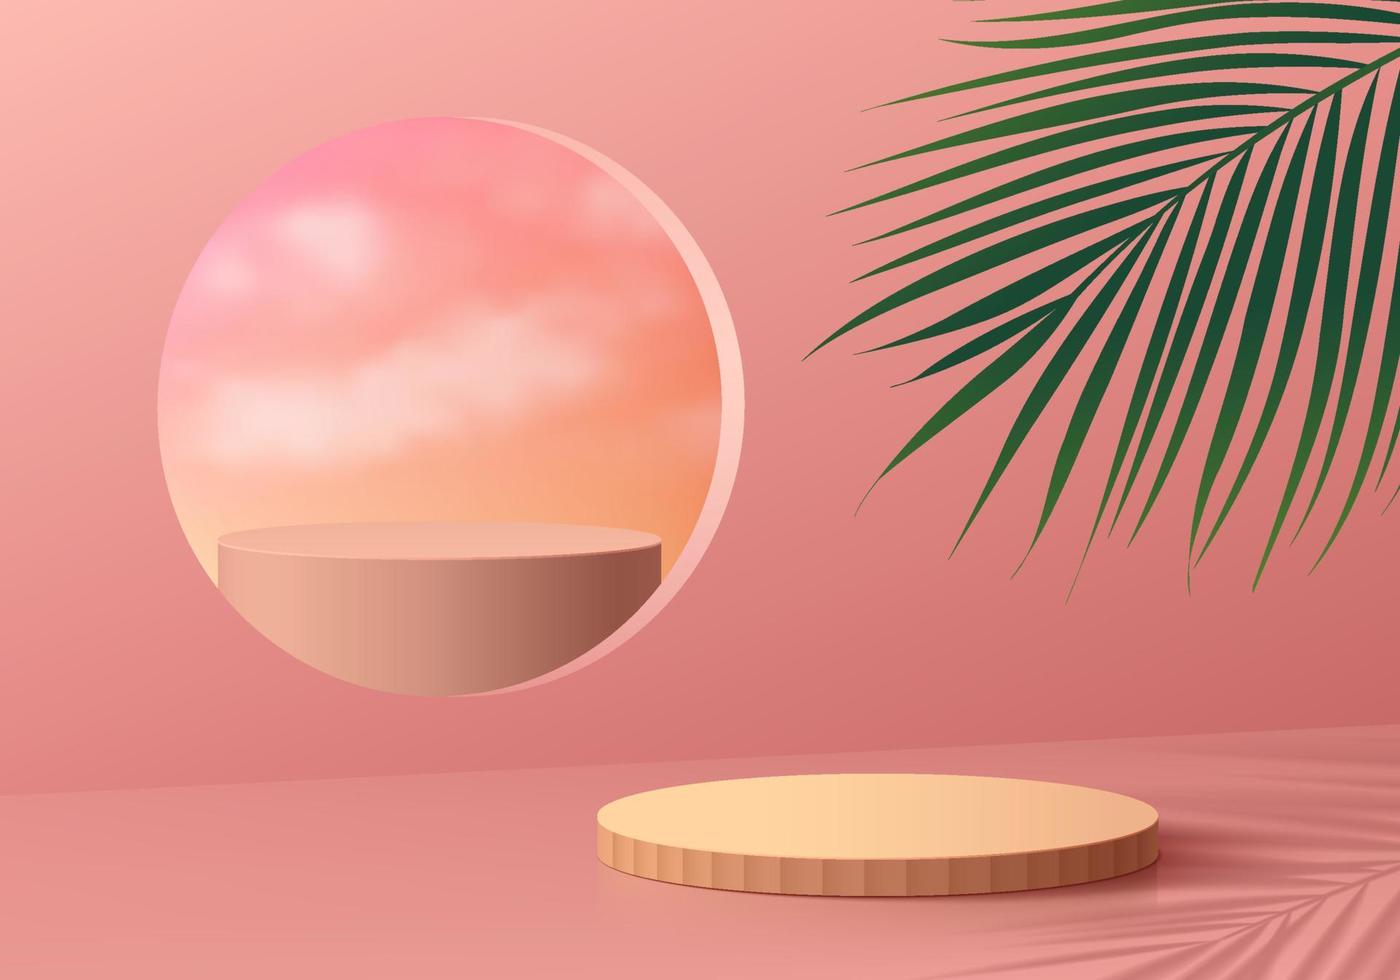 laranja 3d realista, pódio de cilindro com suporte redondo rosa na janela do círculo e fundo de folha de palmeira. abstrato de vetor com formas geométricas. cena de parede mínima para exibição de produtos. palco para vitrine.